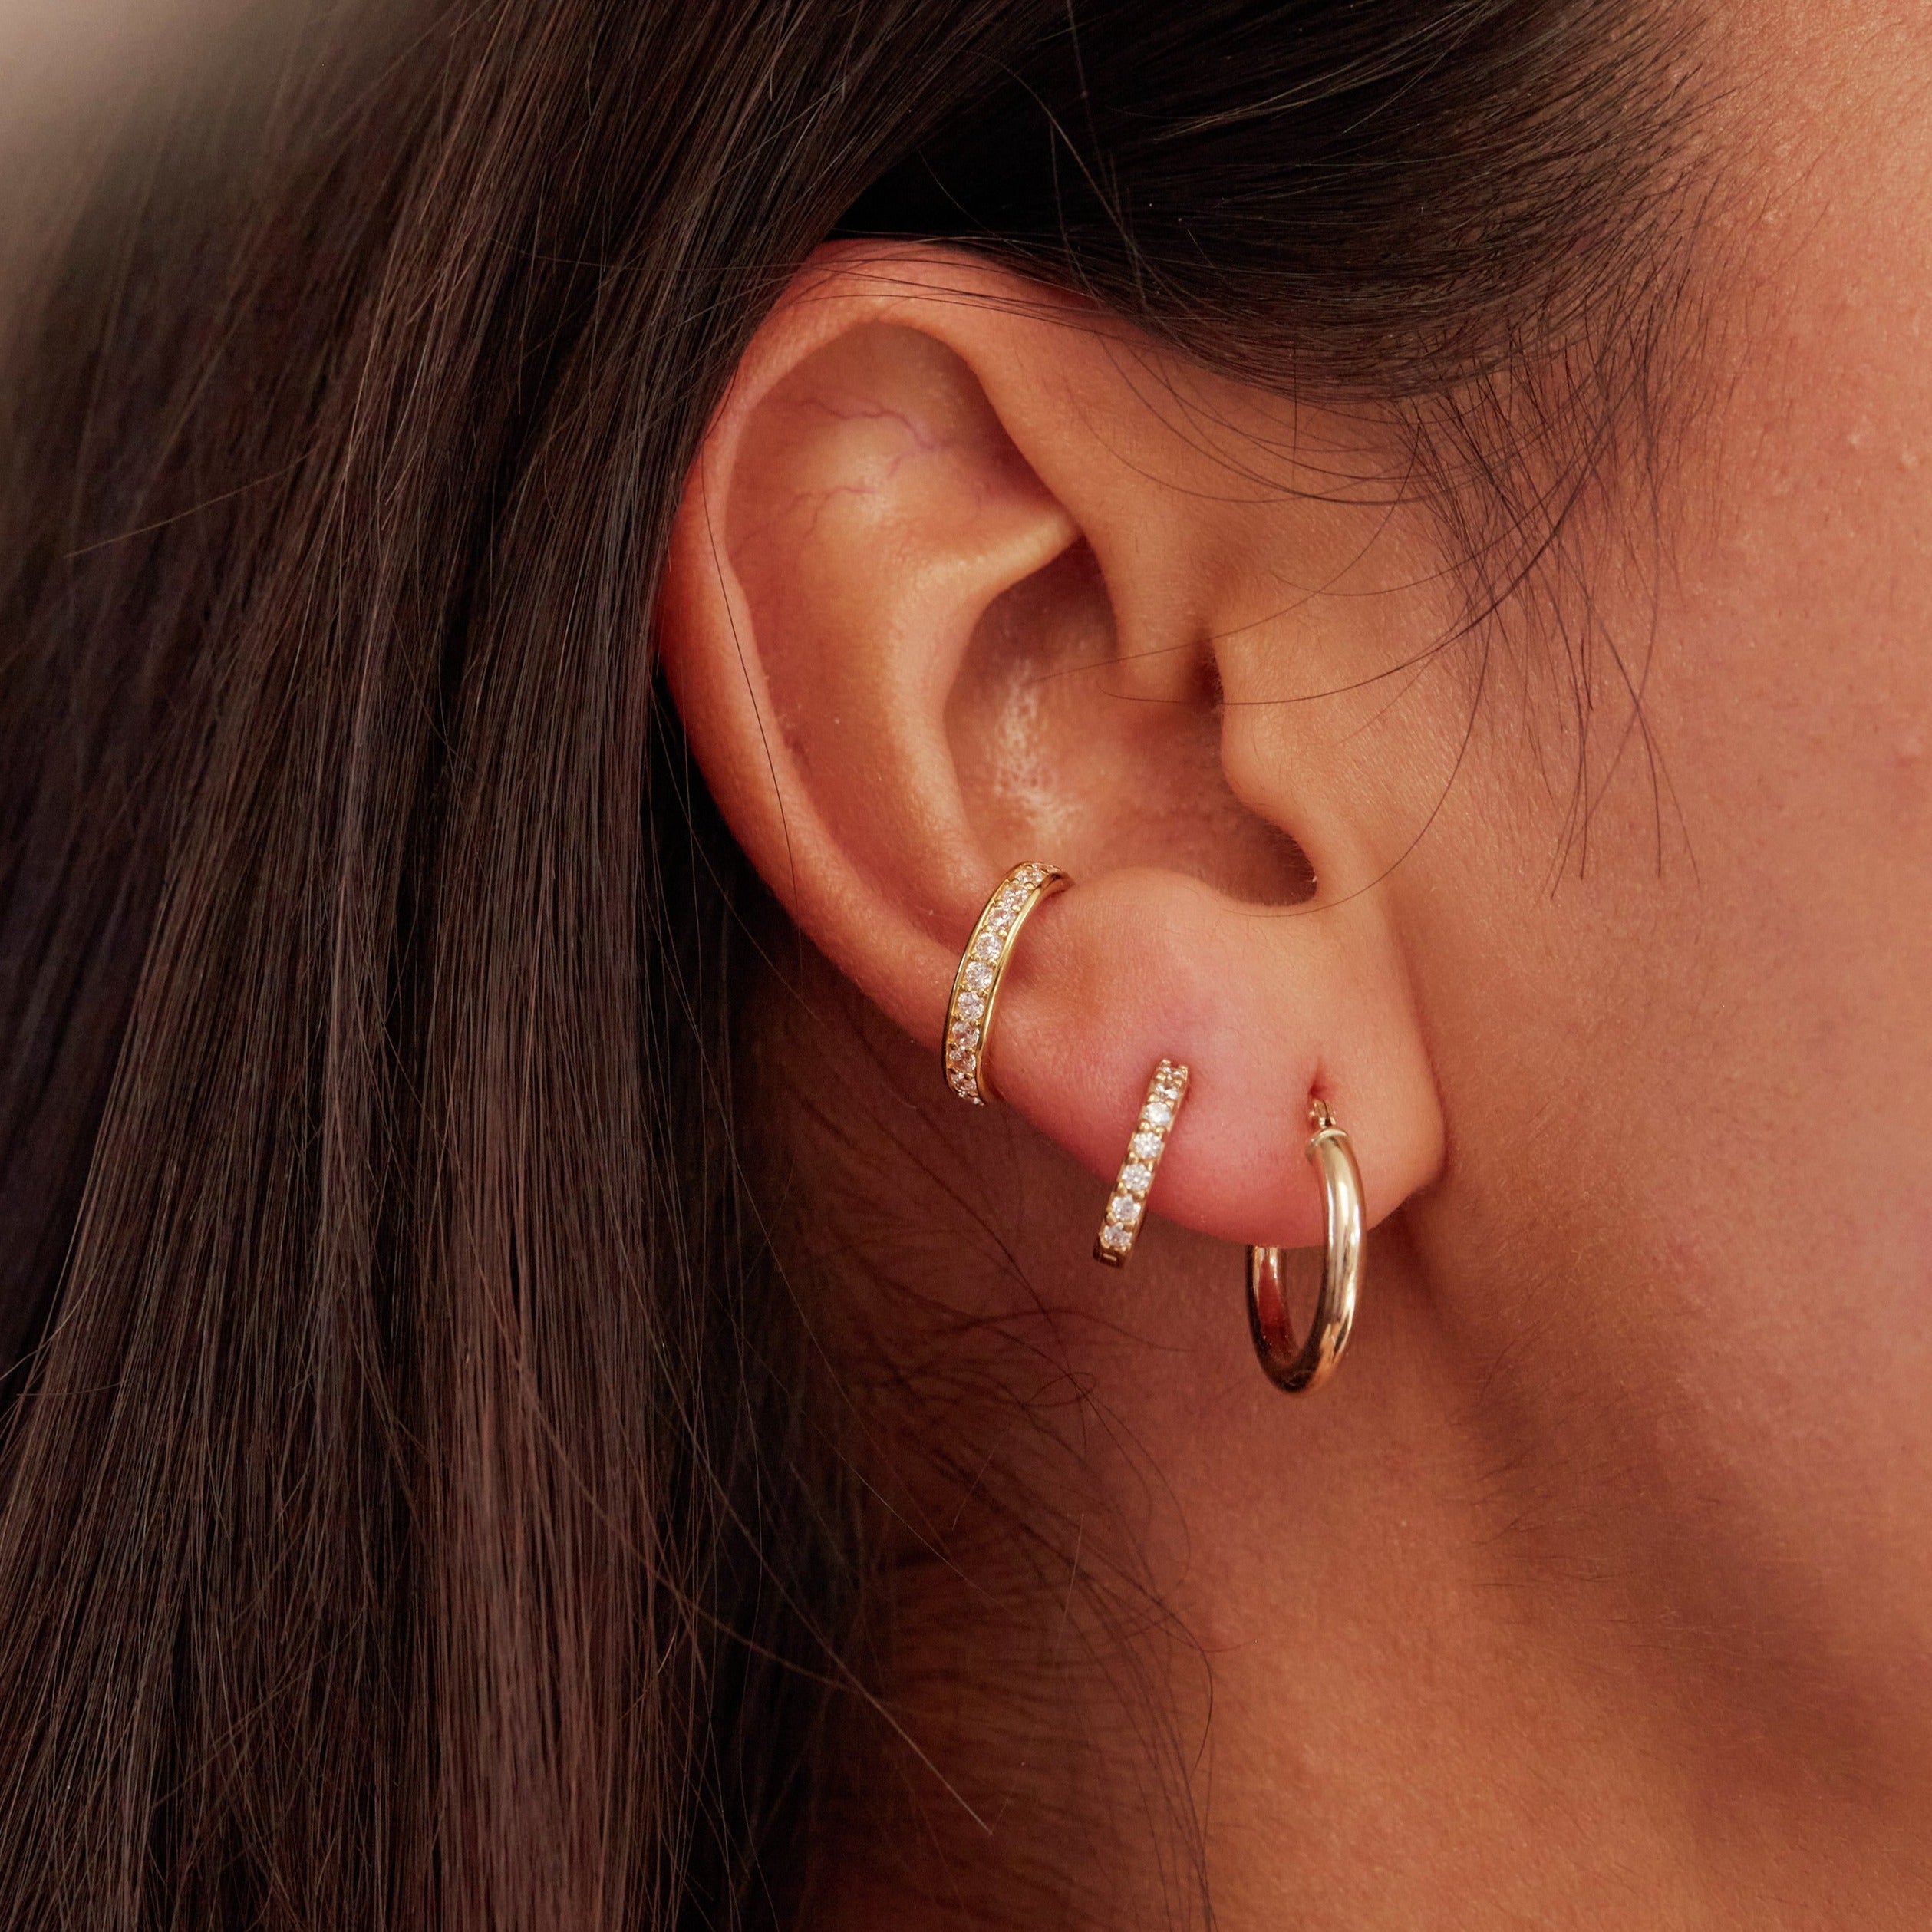 Gold diamond style huggie hoop earrings with other huggie hoop earrings in one ear lobe